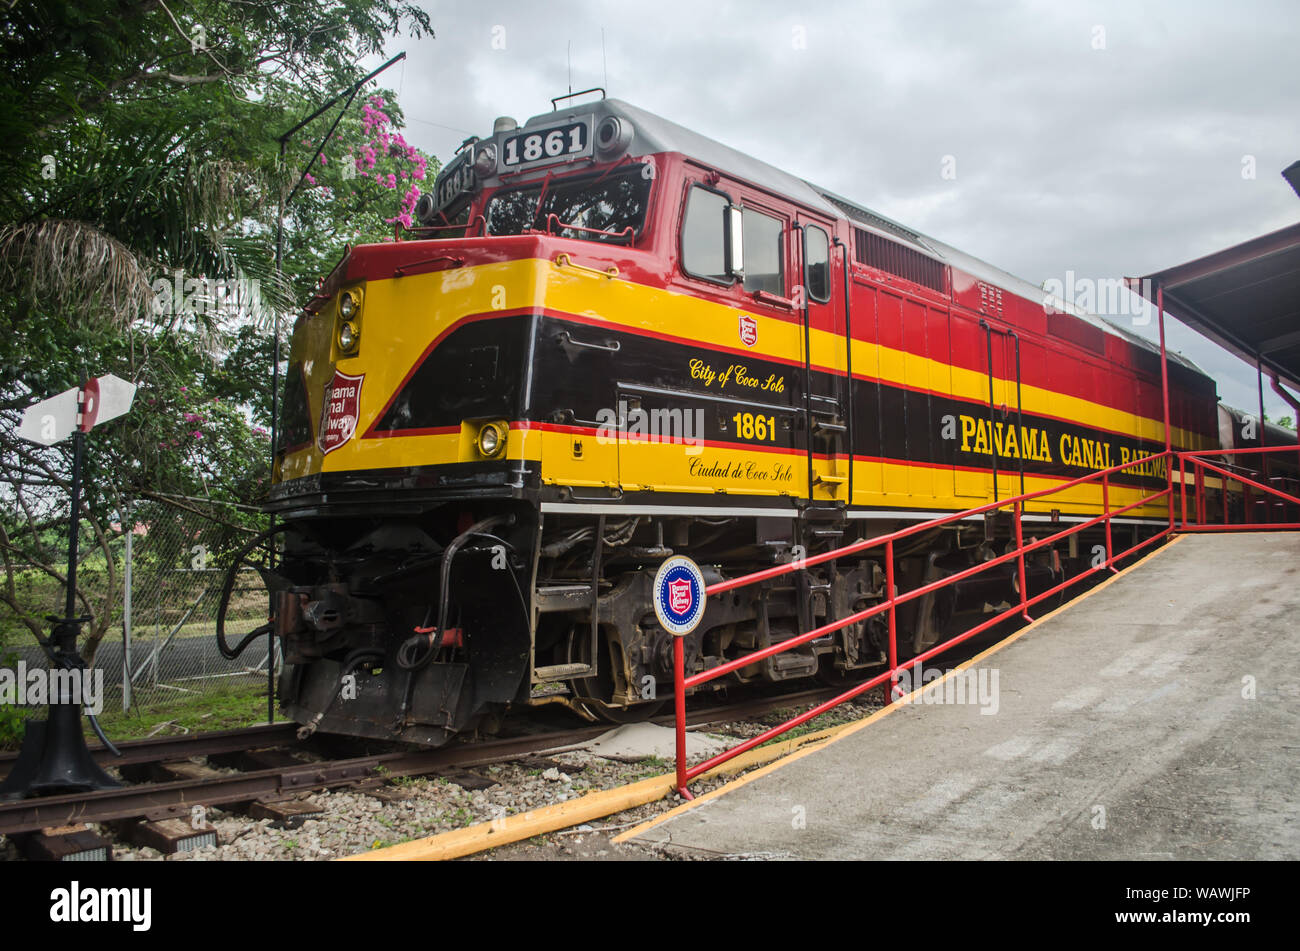 Panama Canal Railway nella stazione ferroviaria di Corozal. La Panama Canal Railway è una ferrovia storica e significativa che corre parallela al Canale di Panama Foto Stock